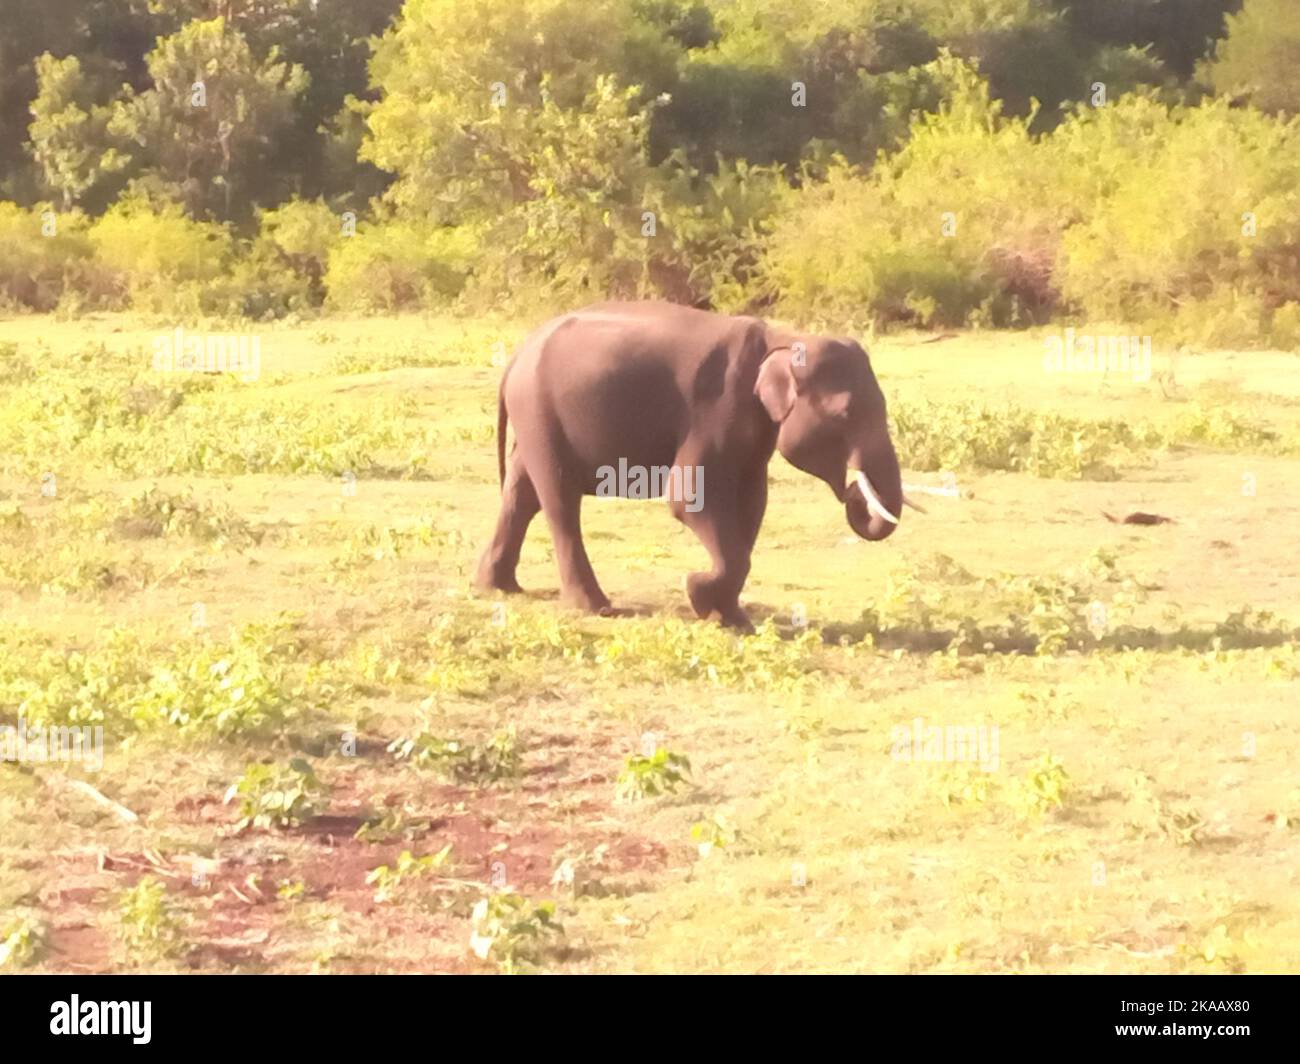 Éléphants de Sri Lanka. Visite Sri Lanka Banque D'Images